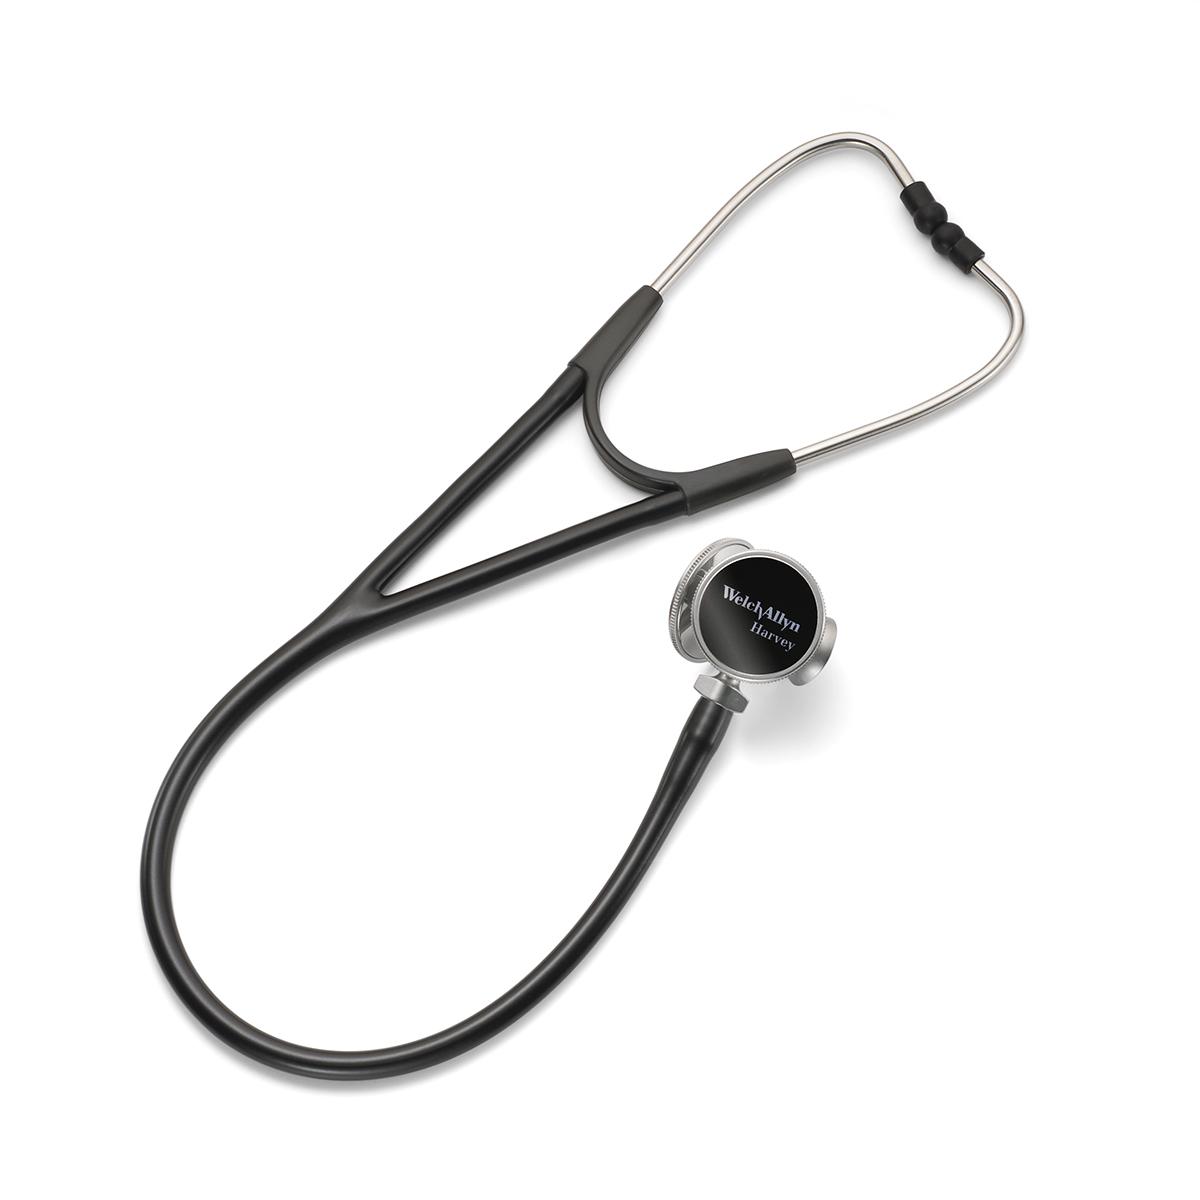 Stetoskop Harvey DLX jest wyposażony w opcjonalną, obrotową potrójną głowicę z mosiężnym lejkiem oraz płaską i falistą powierzchnią membrany.